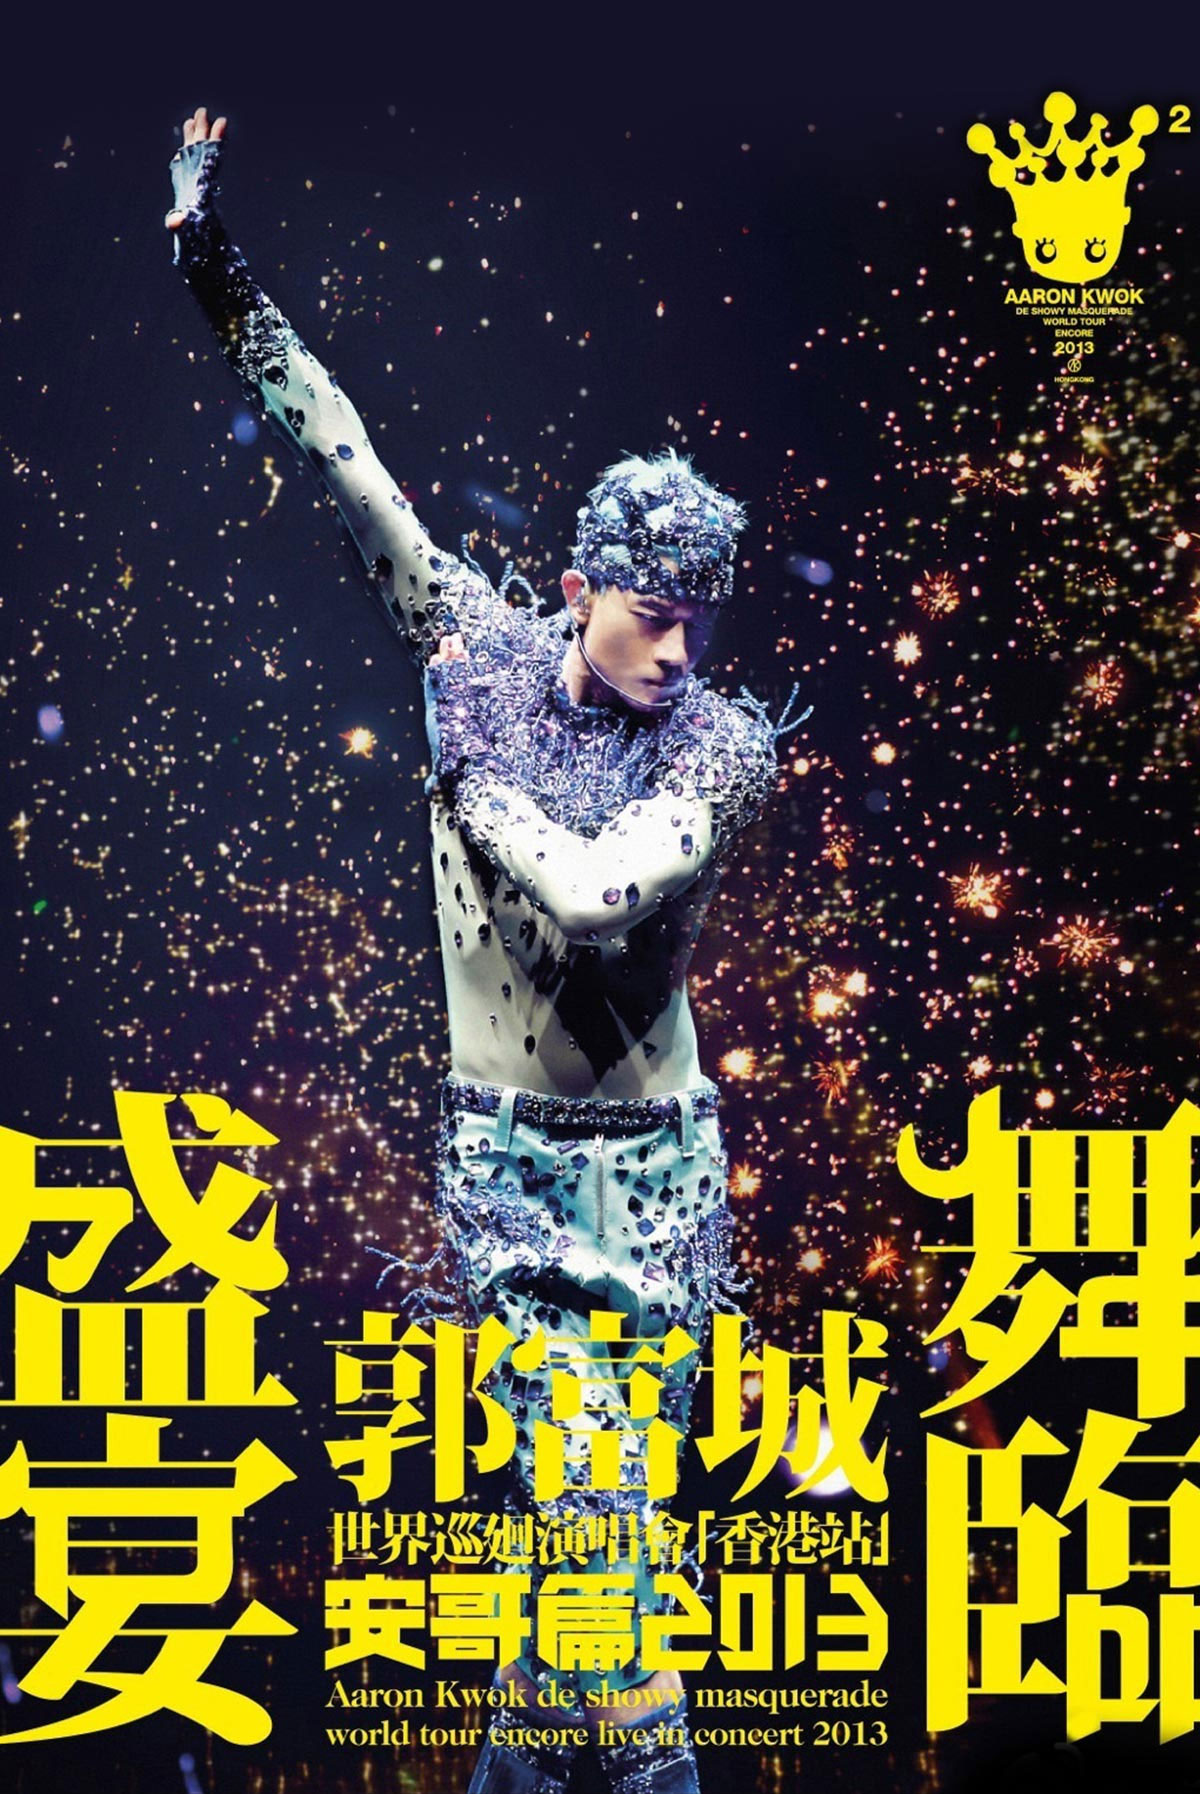 明日预售|郭富城“舞林密码”世界巡回演唱会2019北京站3月26日16:16开启预售__凤凰网